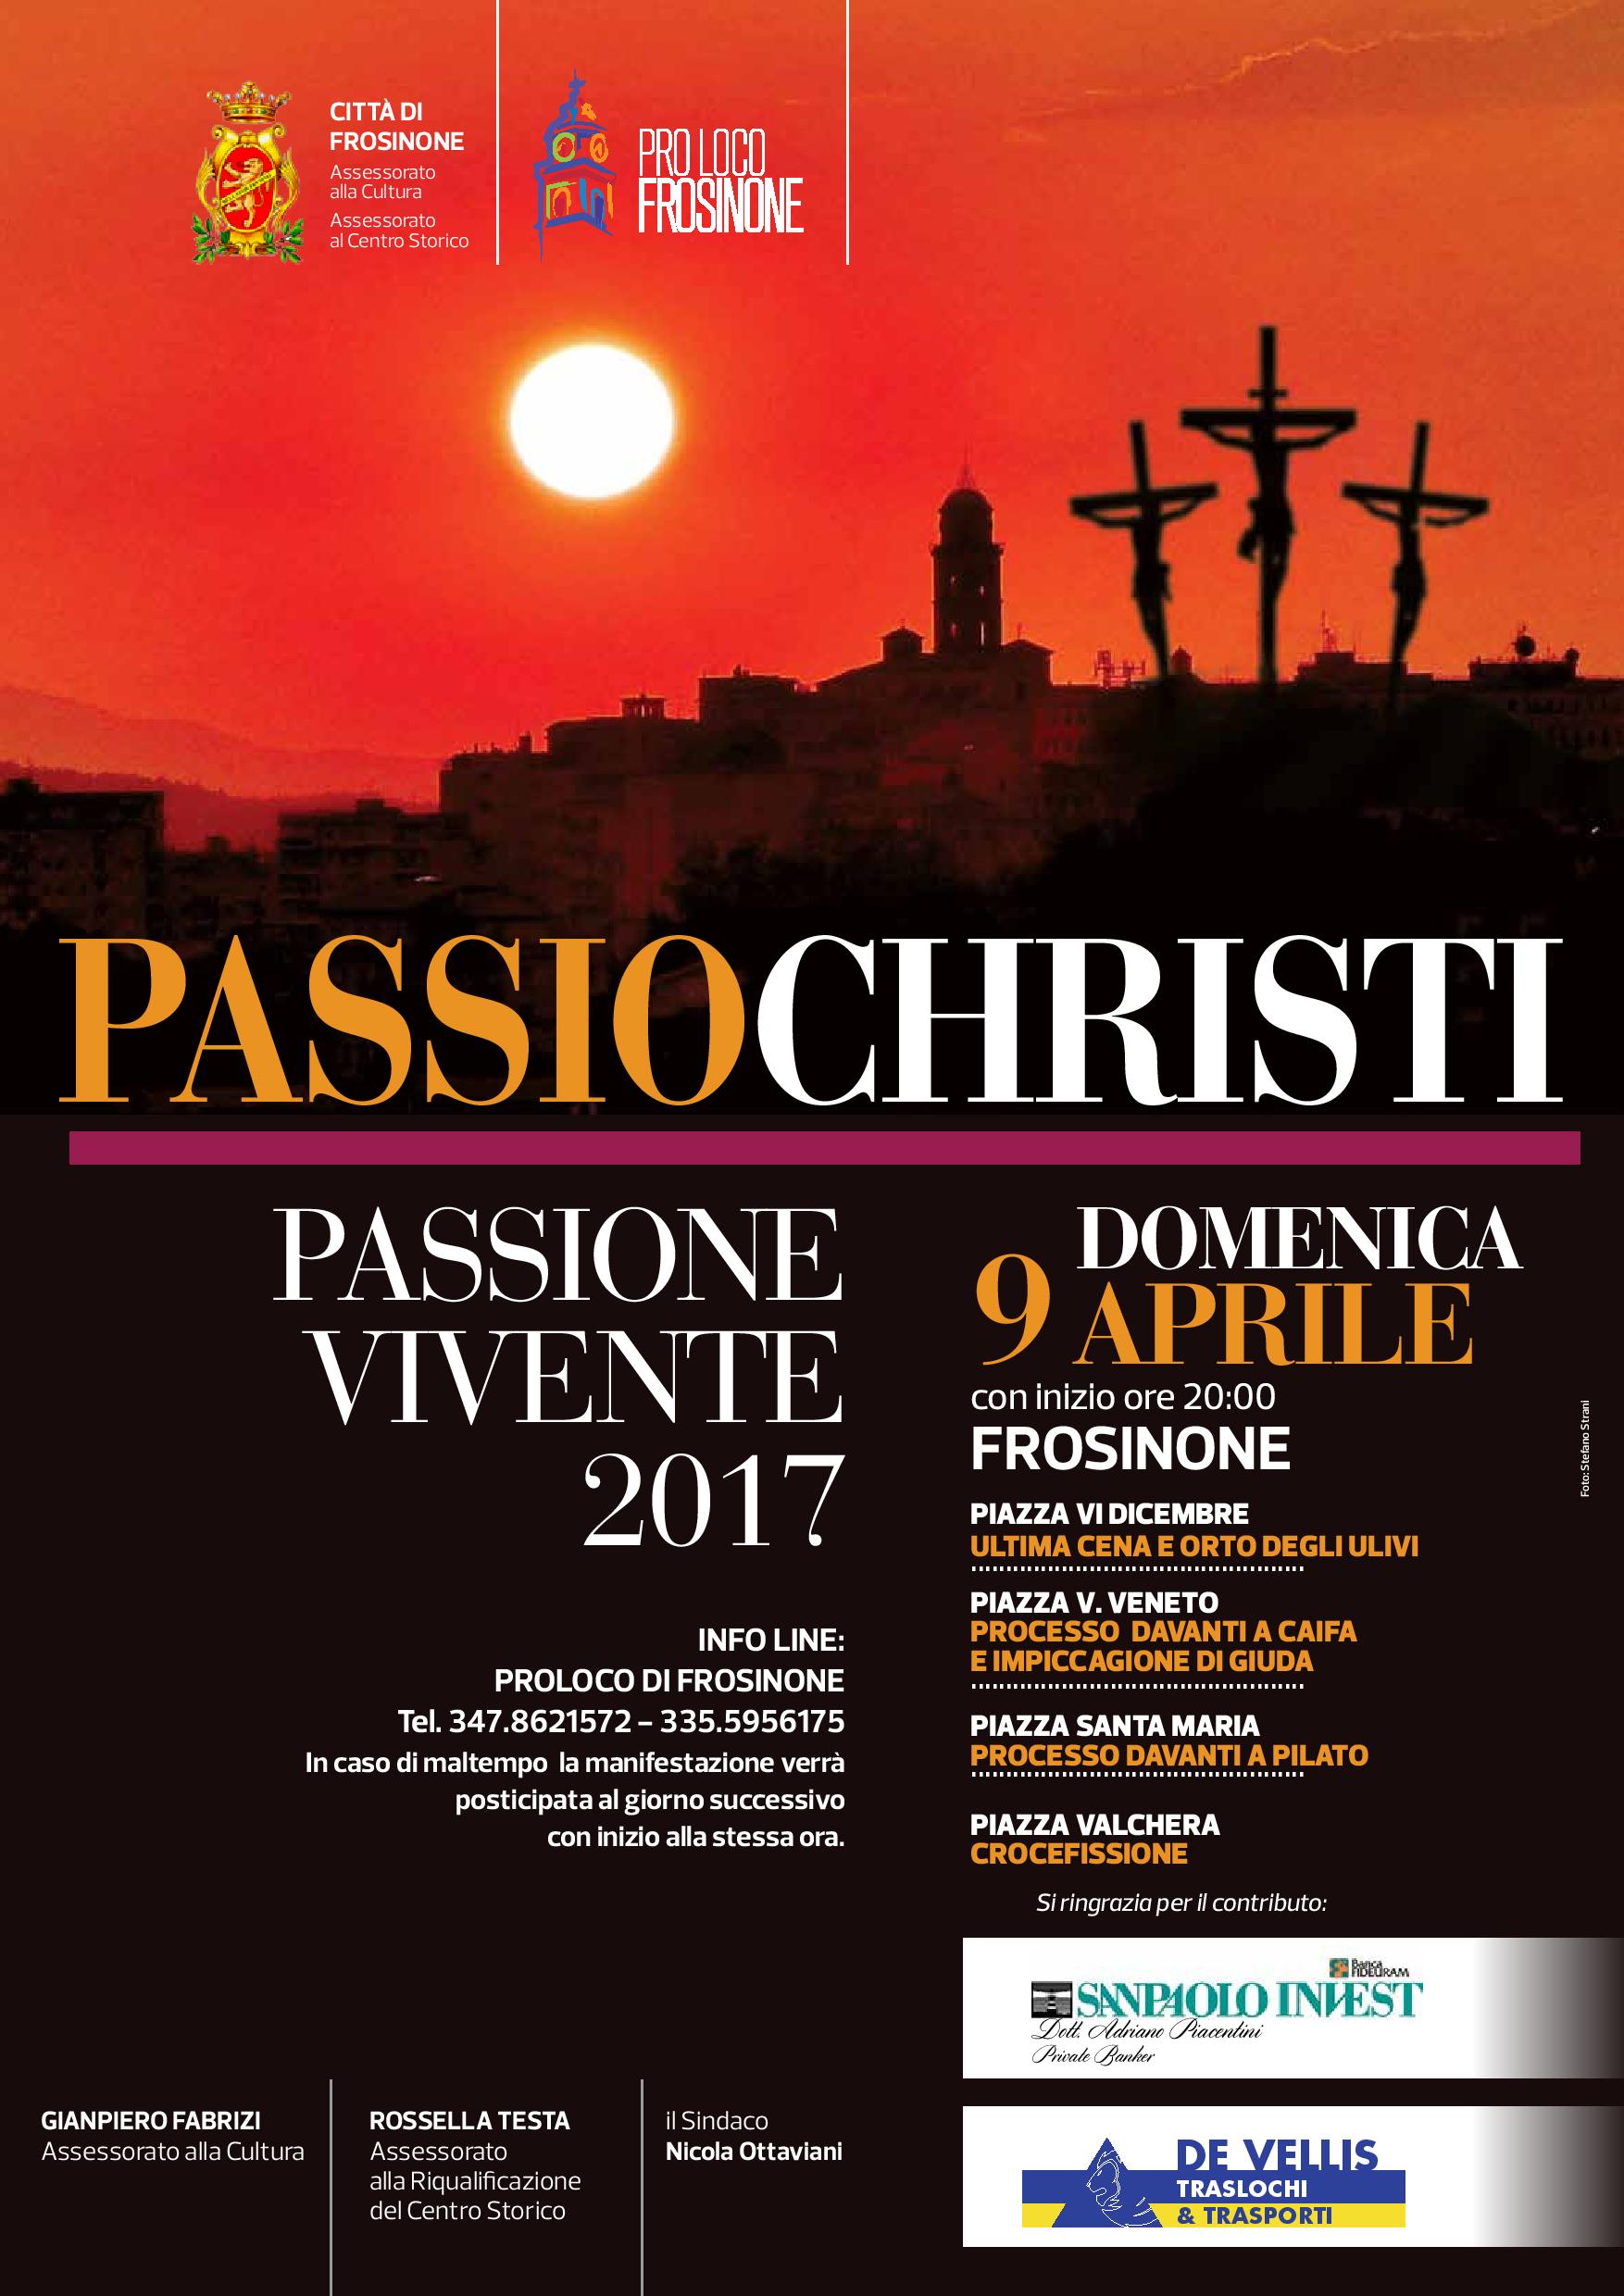 Domenica 9 aprile, Frosinone ospiterà la terza edizione della Passio Christi – Passione Vivente.